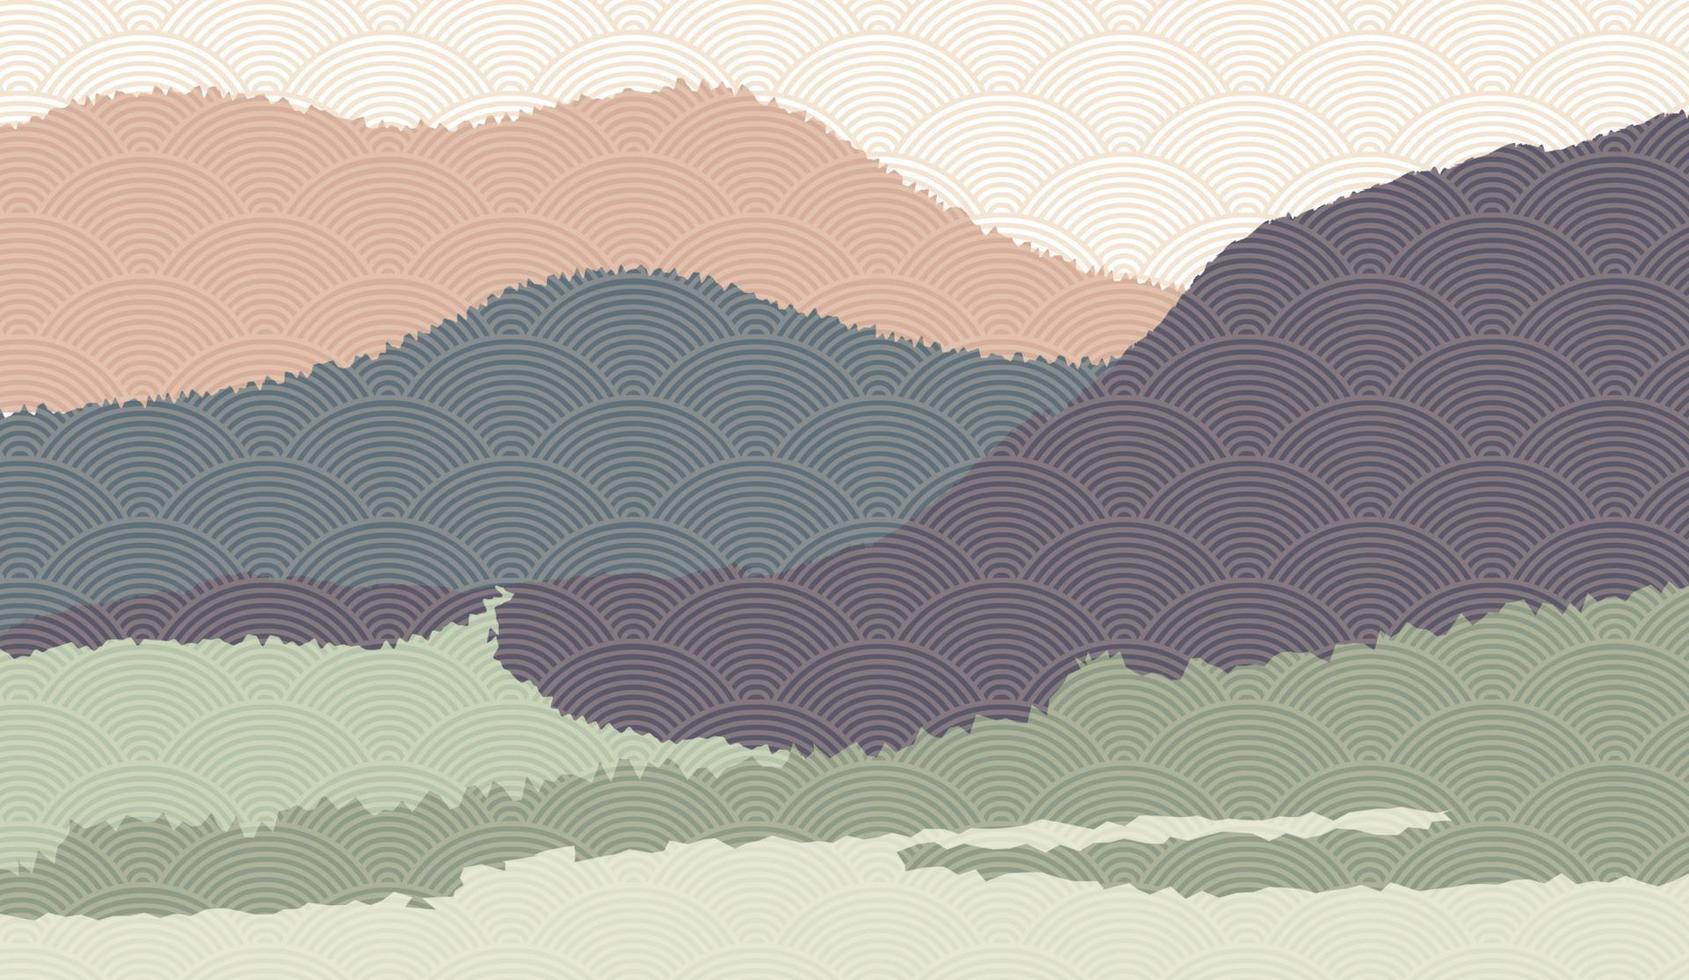 fond de paysage avec des paysages de montagne décorés avec un motif de vagues japonaises. illustration vectorielle du thème de voyage et d & # 39; aventure avec paysage de nature abstraite vecteur